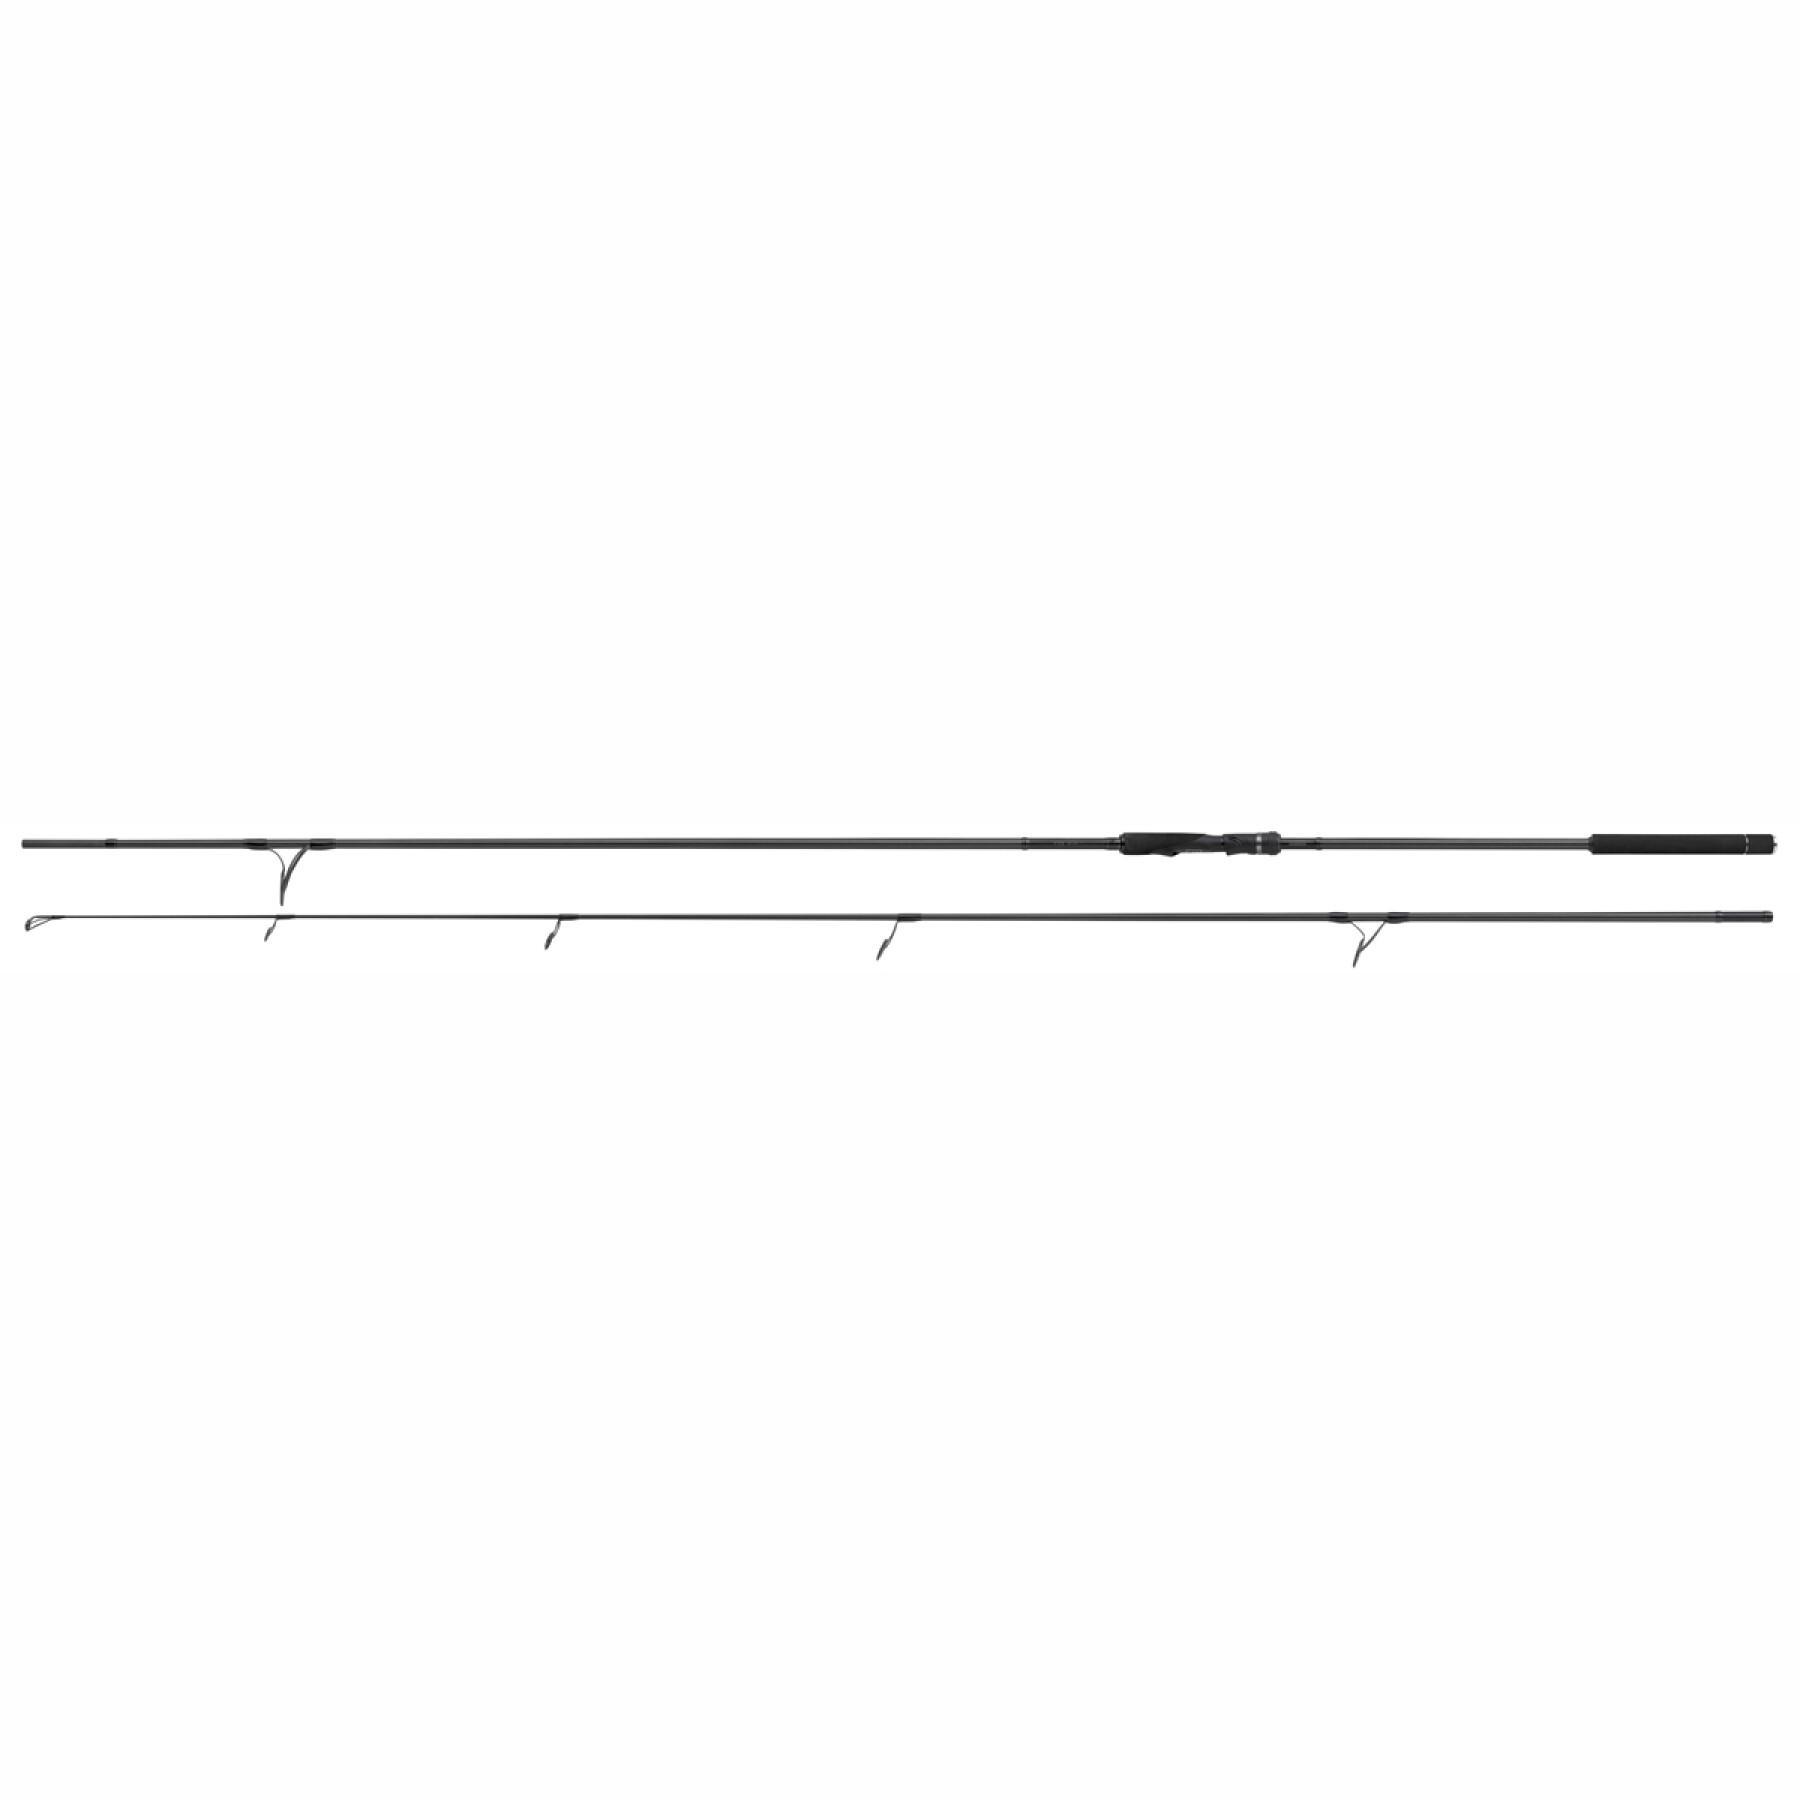 Canna da carpa Shimano TX-9A 10 ft 3.00 lb